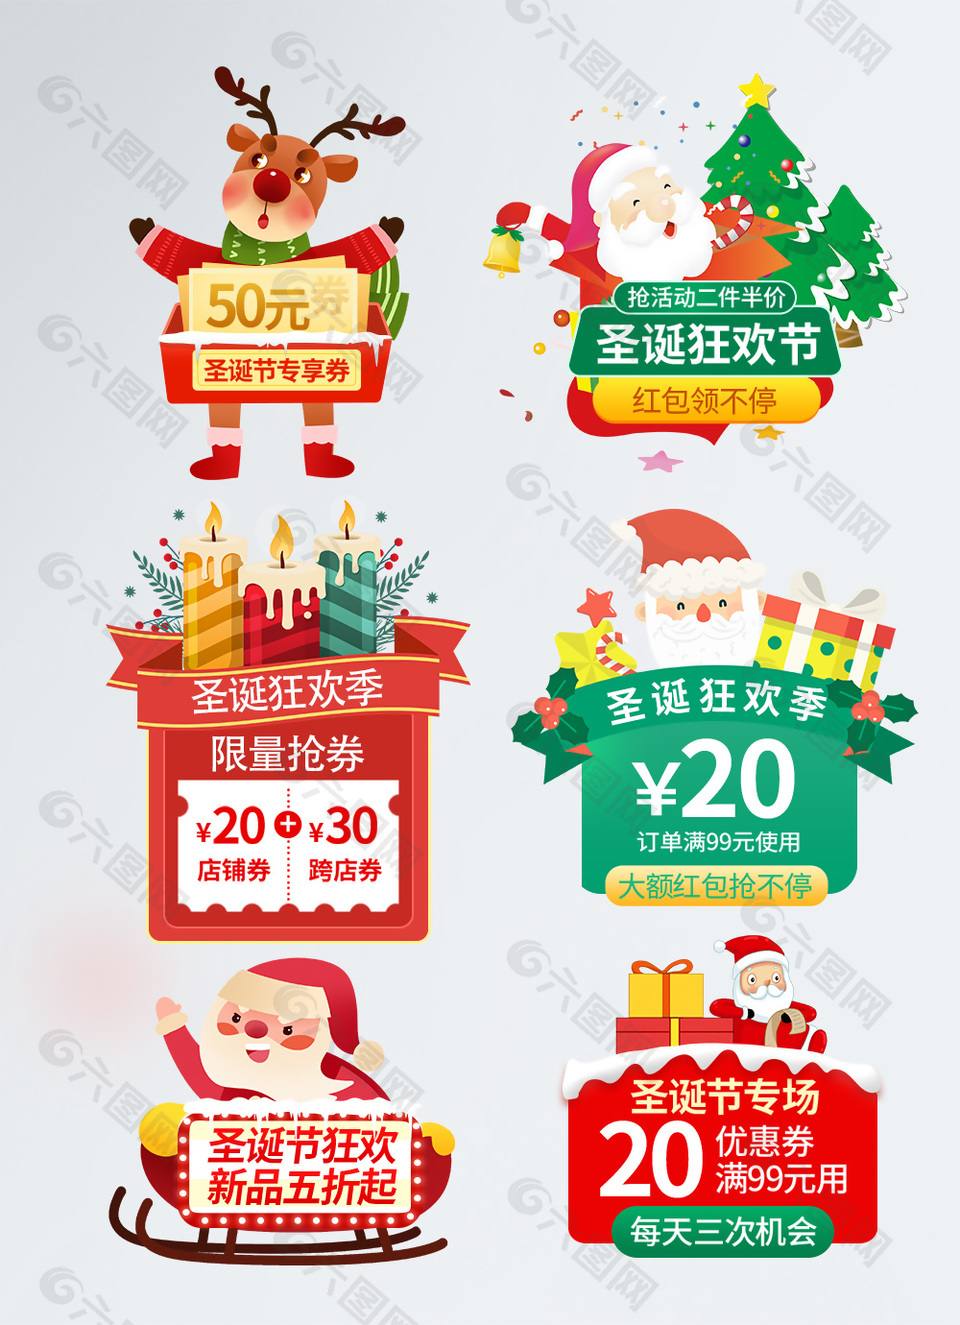 圣诞节狂欢季专场圣诞老人插画促销标签设计